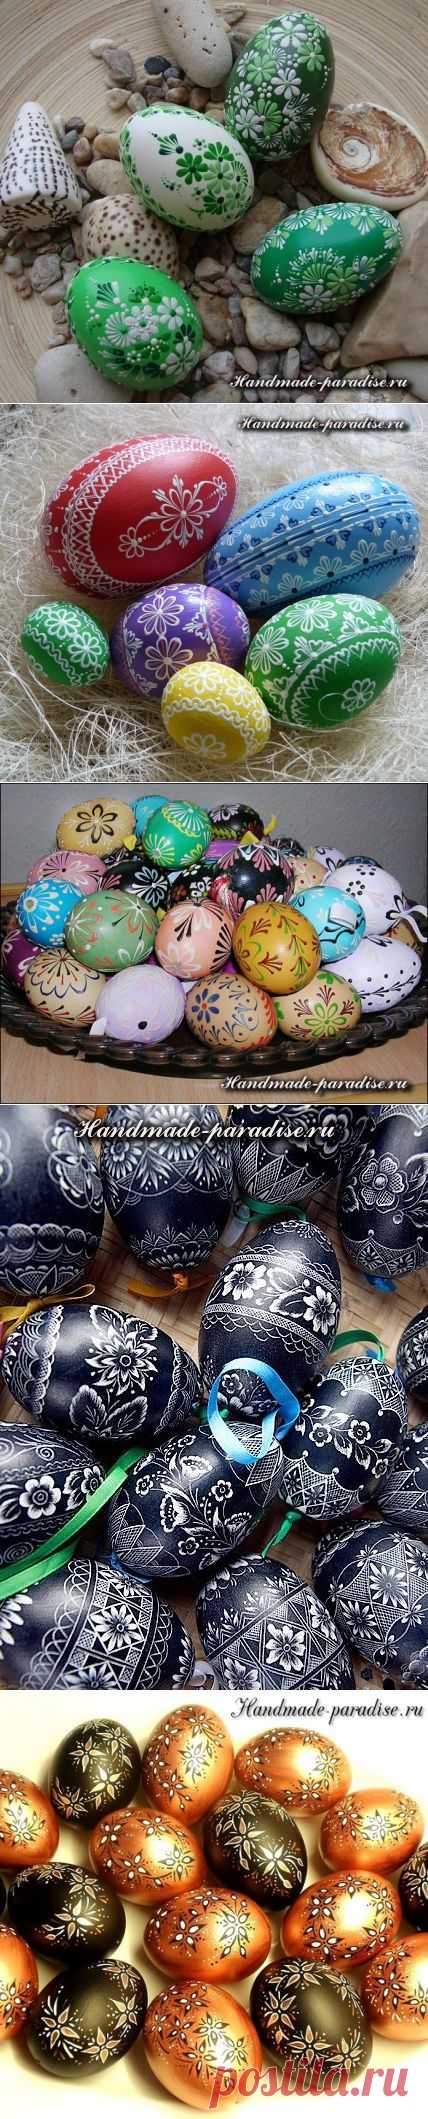 Роспись пасхальных яиц горячим воском - Handmade-Paradise